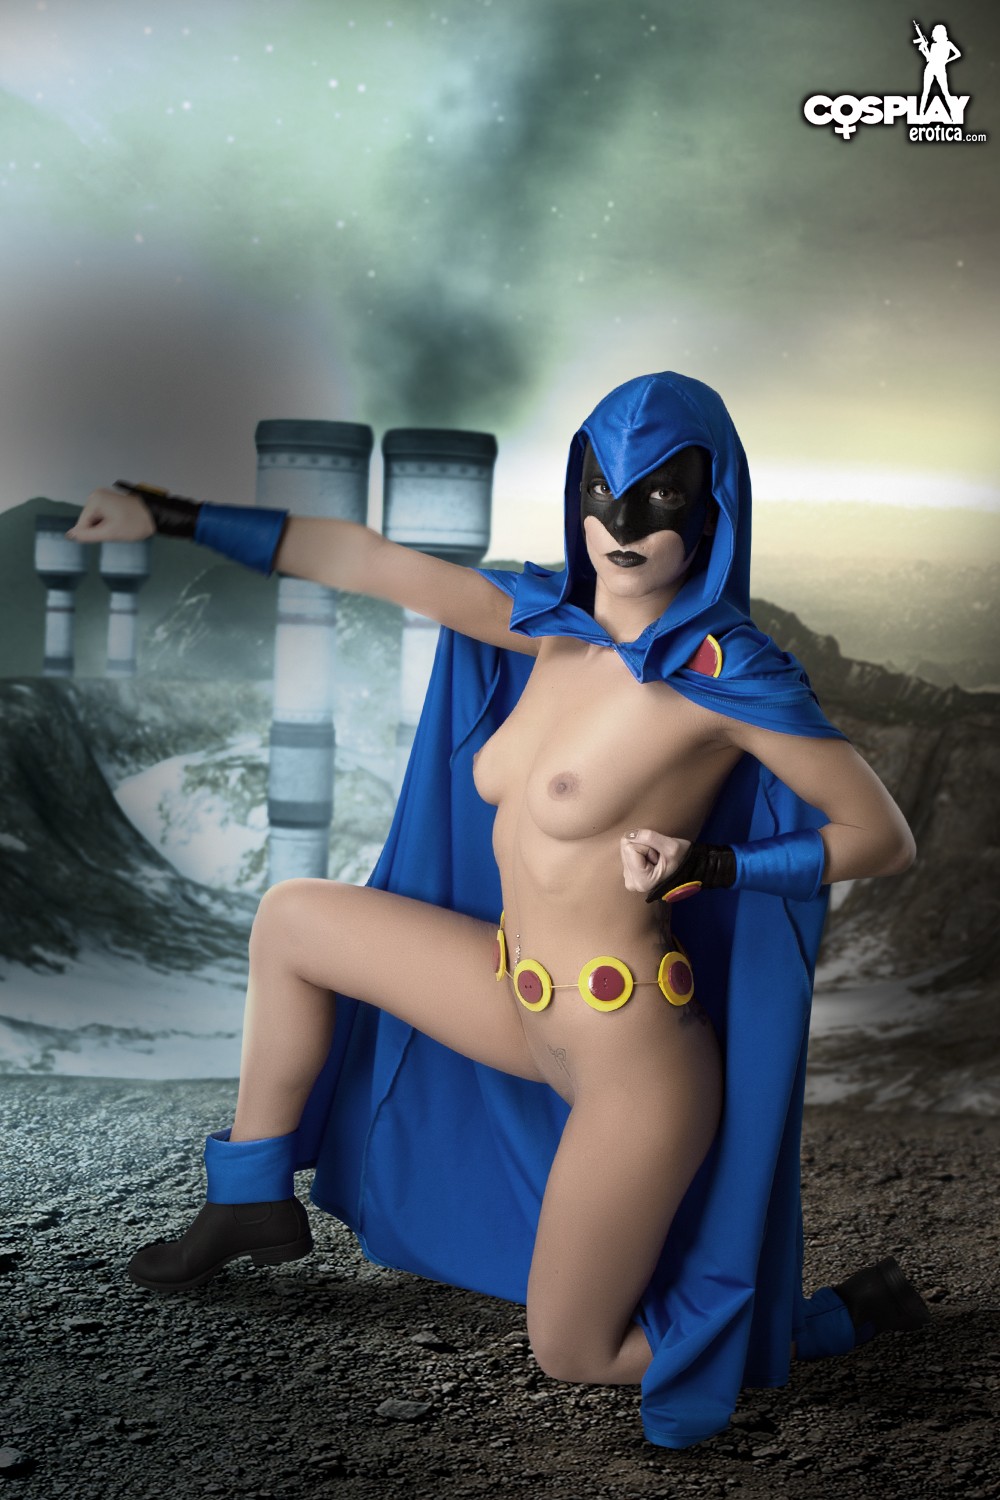 Nude raven cosplay